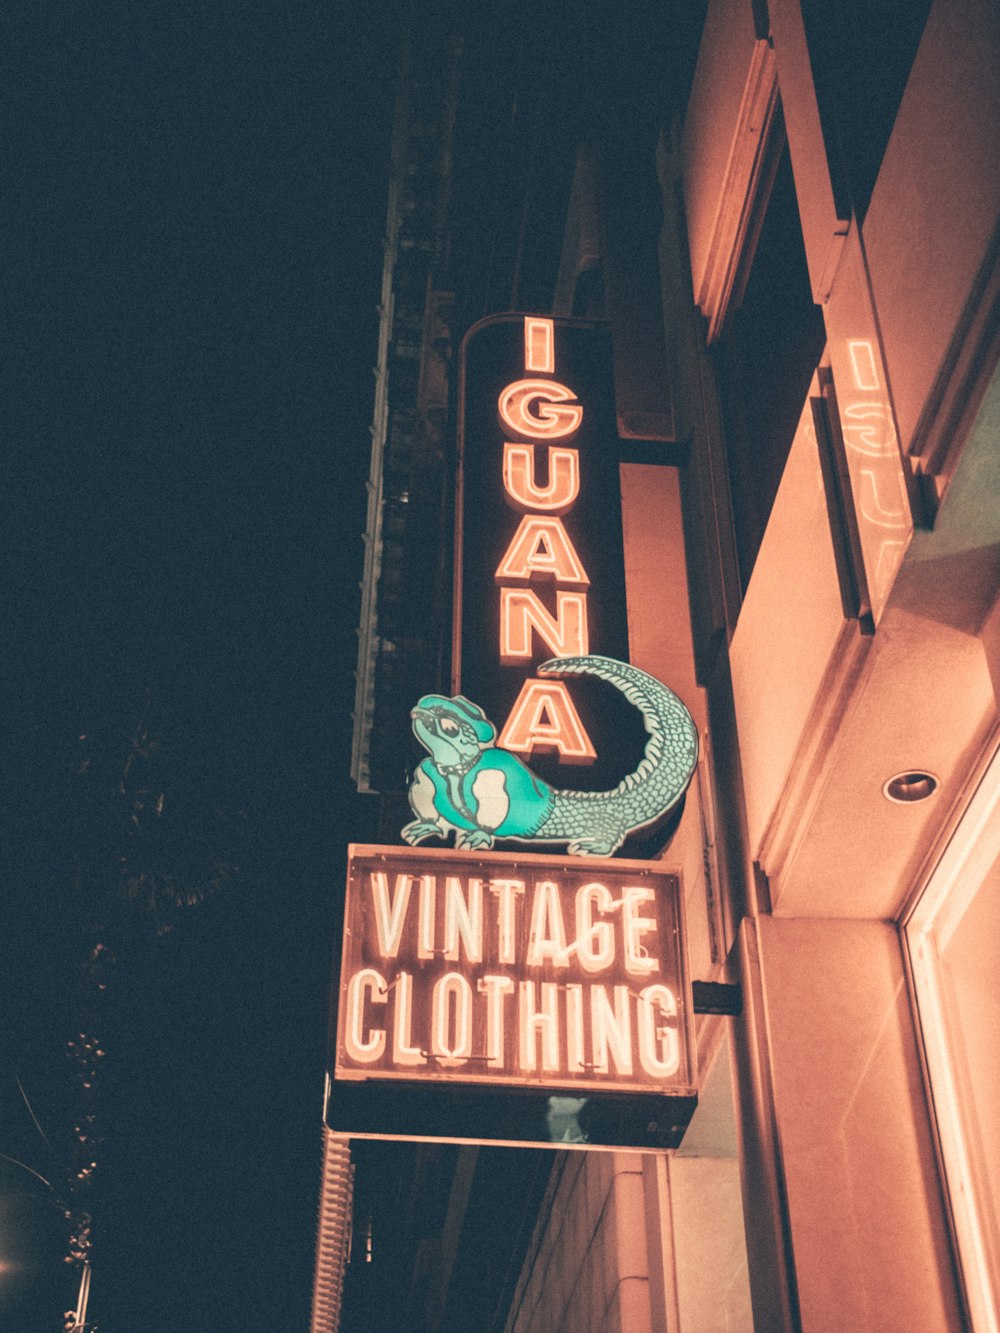 Iguana Vintage Clothing signage